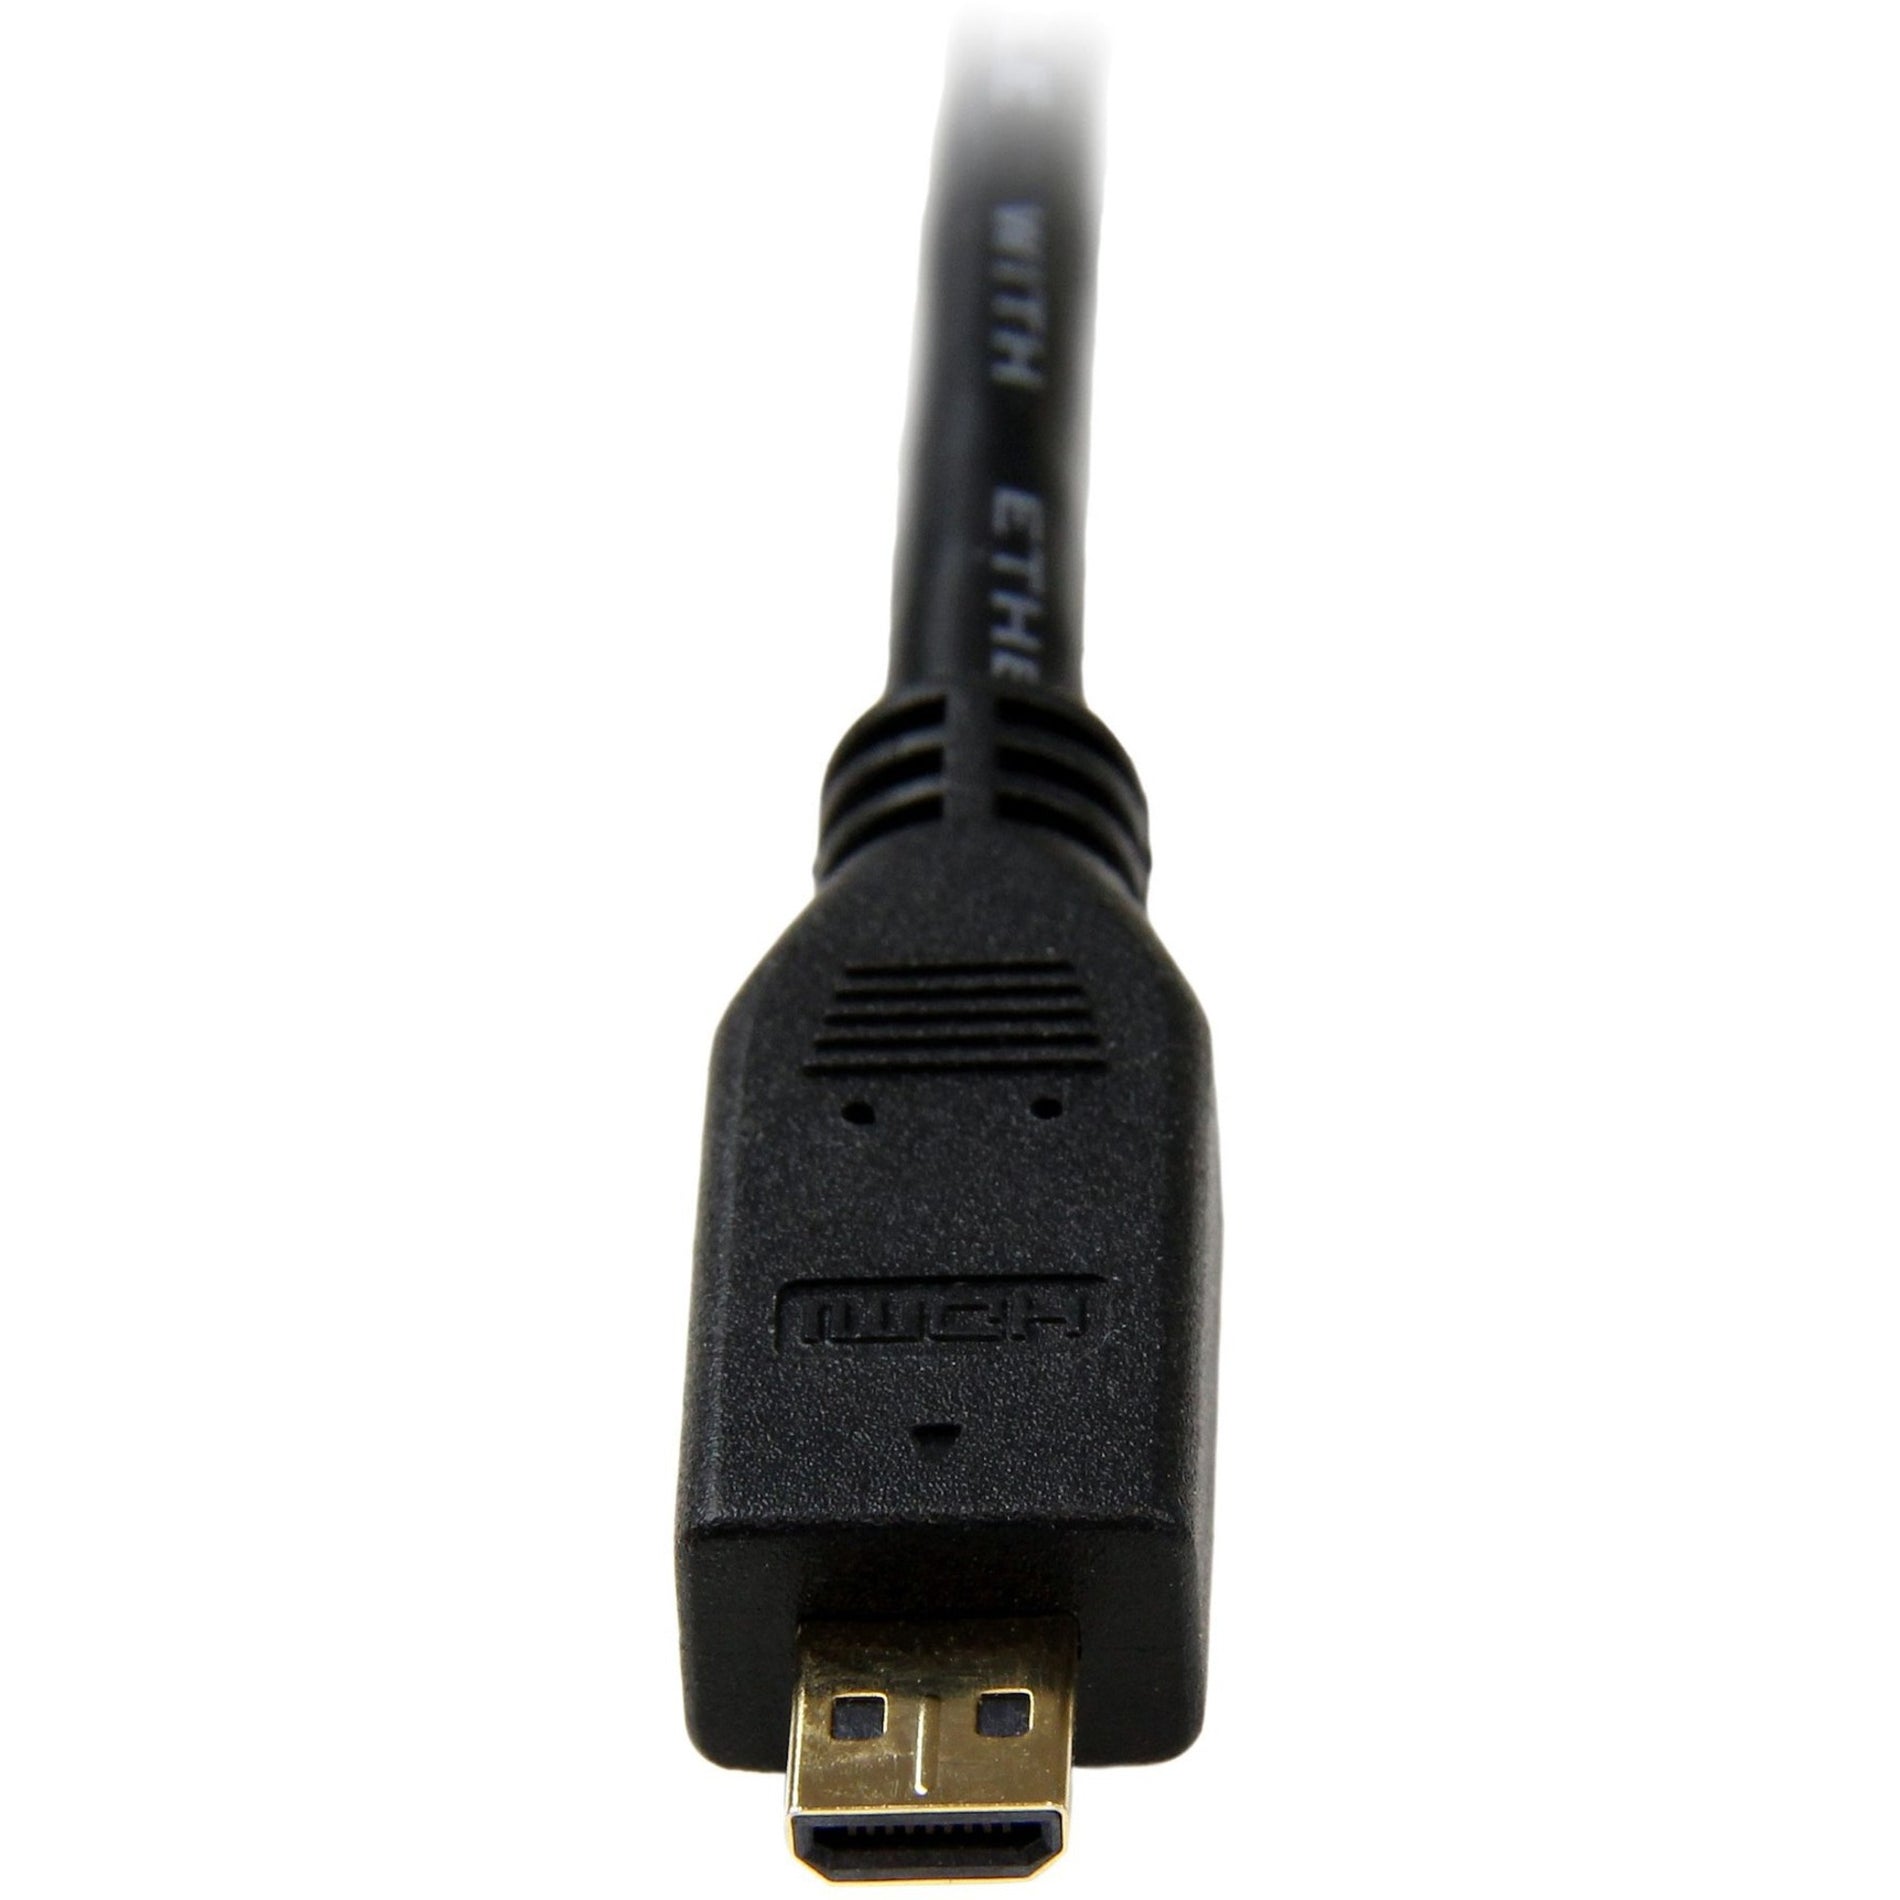 StarTech.com HDMIADMM3 3 ft Cable HDMI de alta velocidad con Ethernet - HDMI a HDMI Micro - M/M compatible con 4K conectores bañados en oro negro.